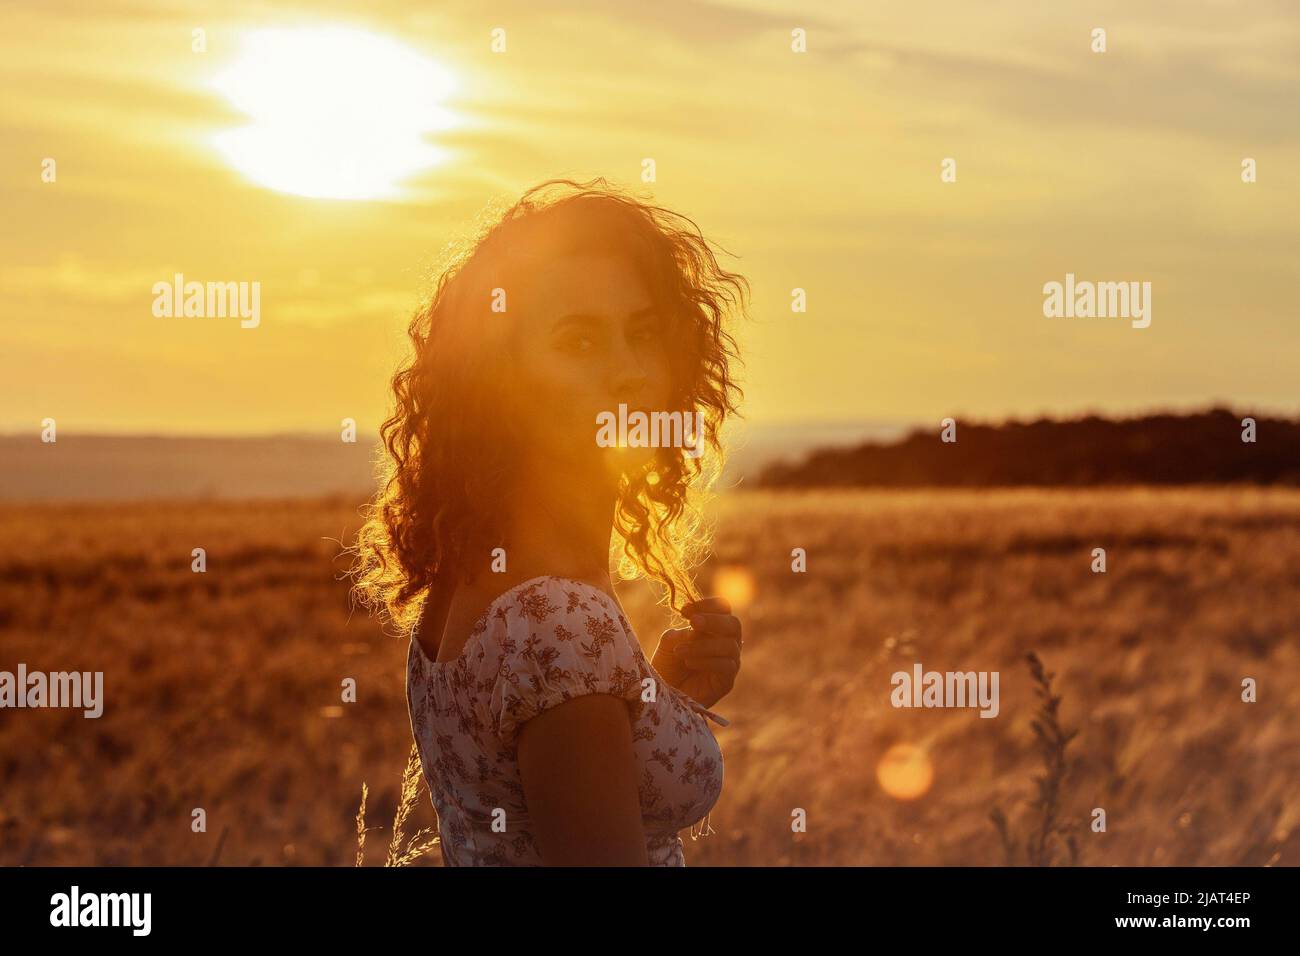 jeune femme marocaine, avec des cheveux bruns, debout dans un champ de blé, tandis que le soleil se pose en arrière-plan et aveuglant la caméra Banque D'Images